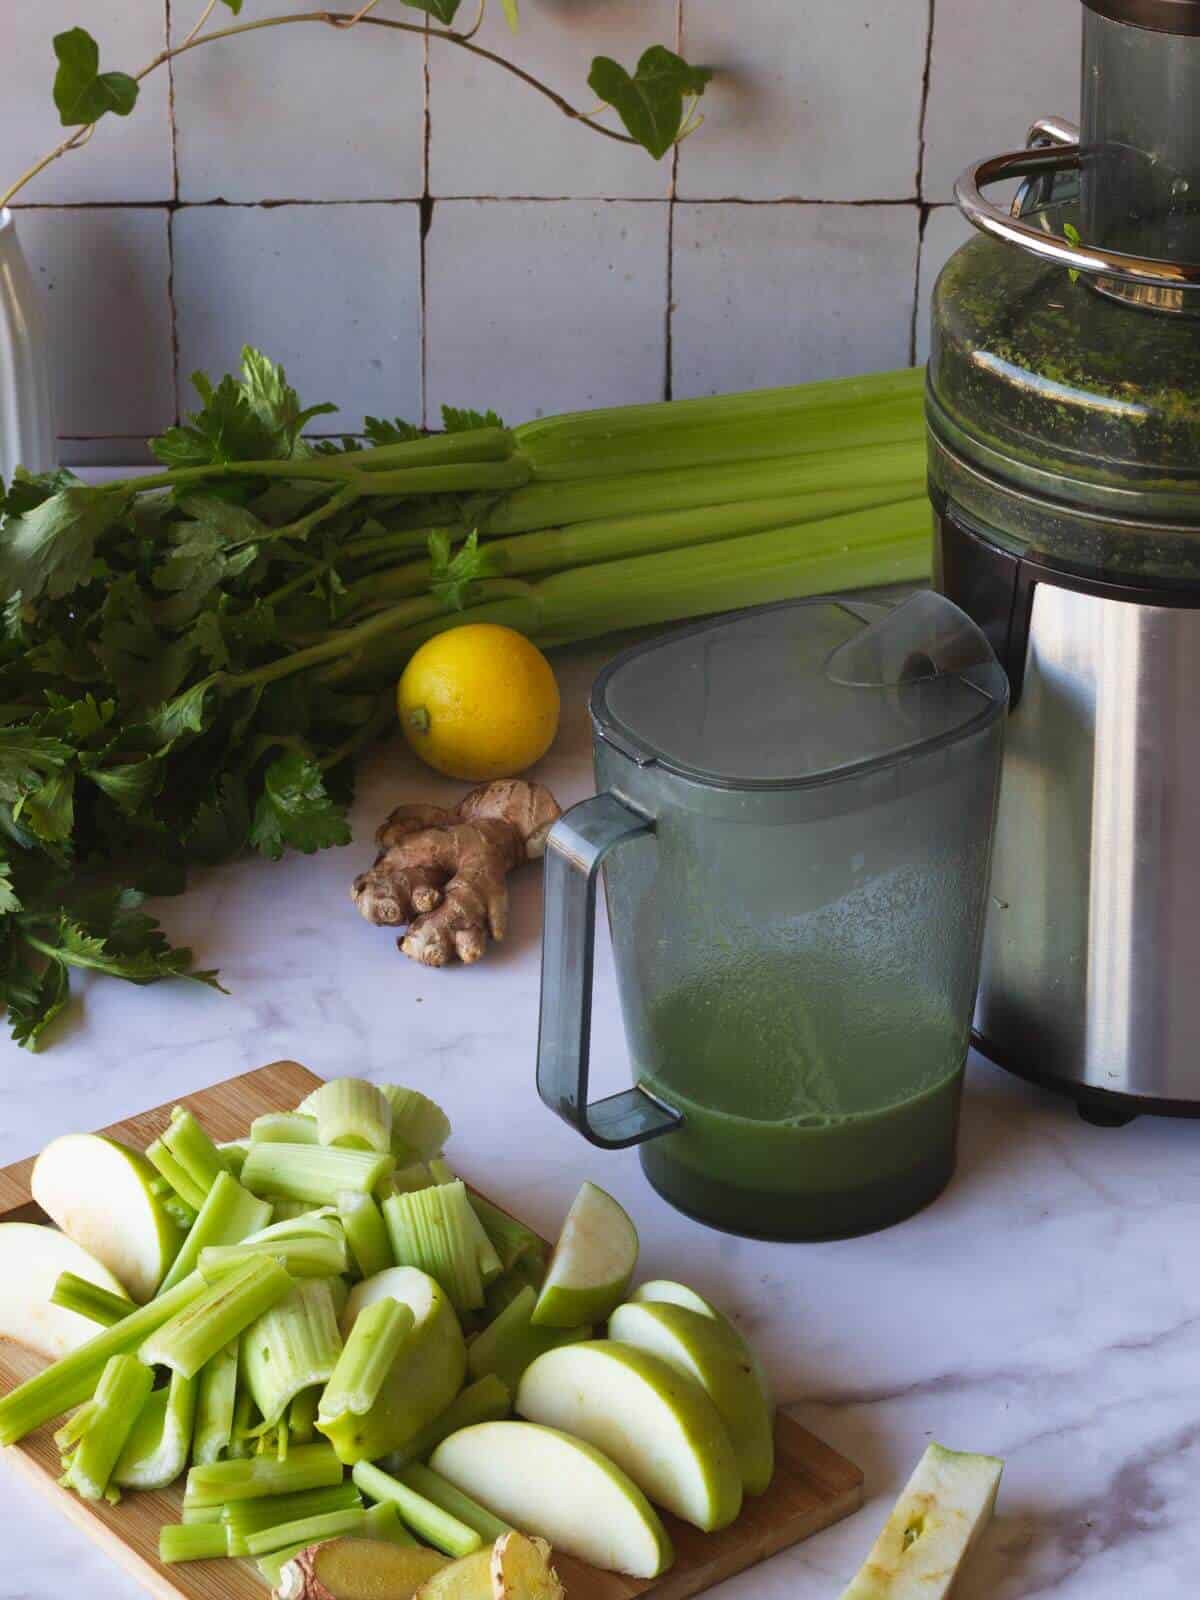 juicing celery juice with a juicer